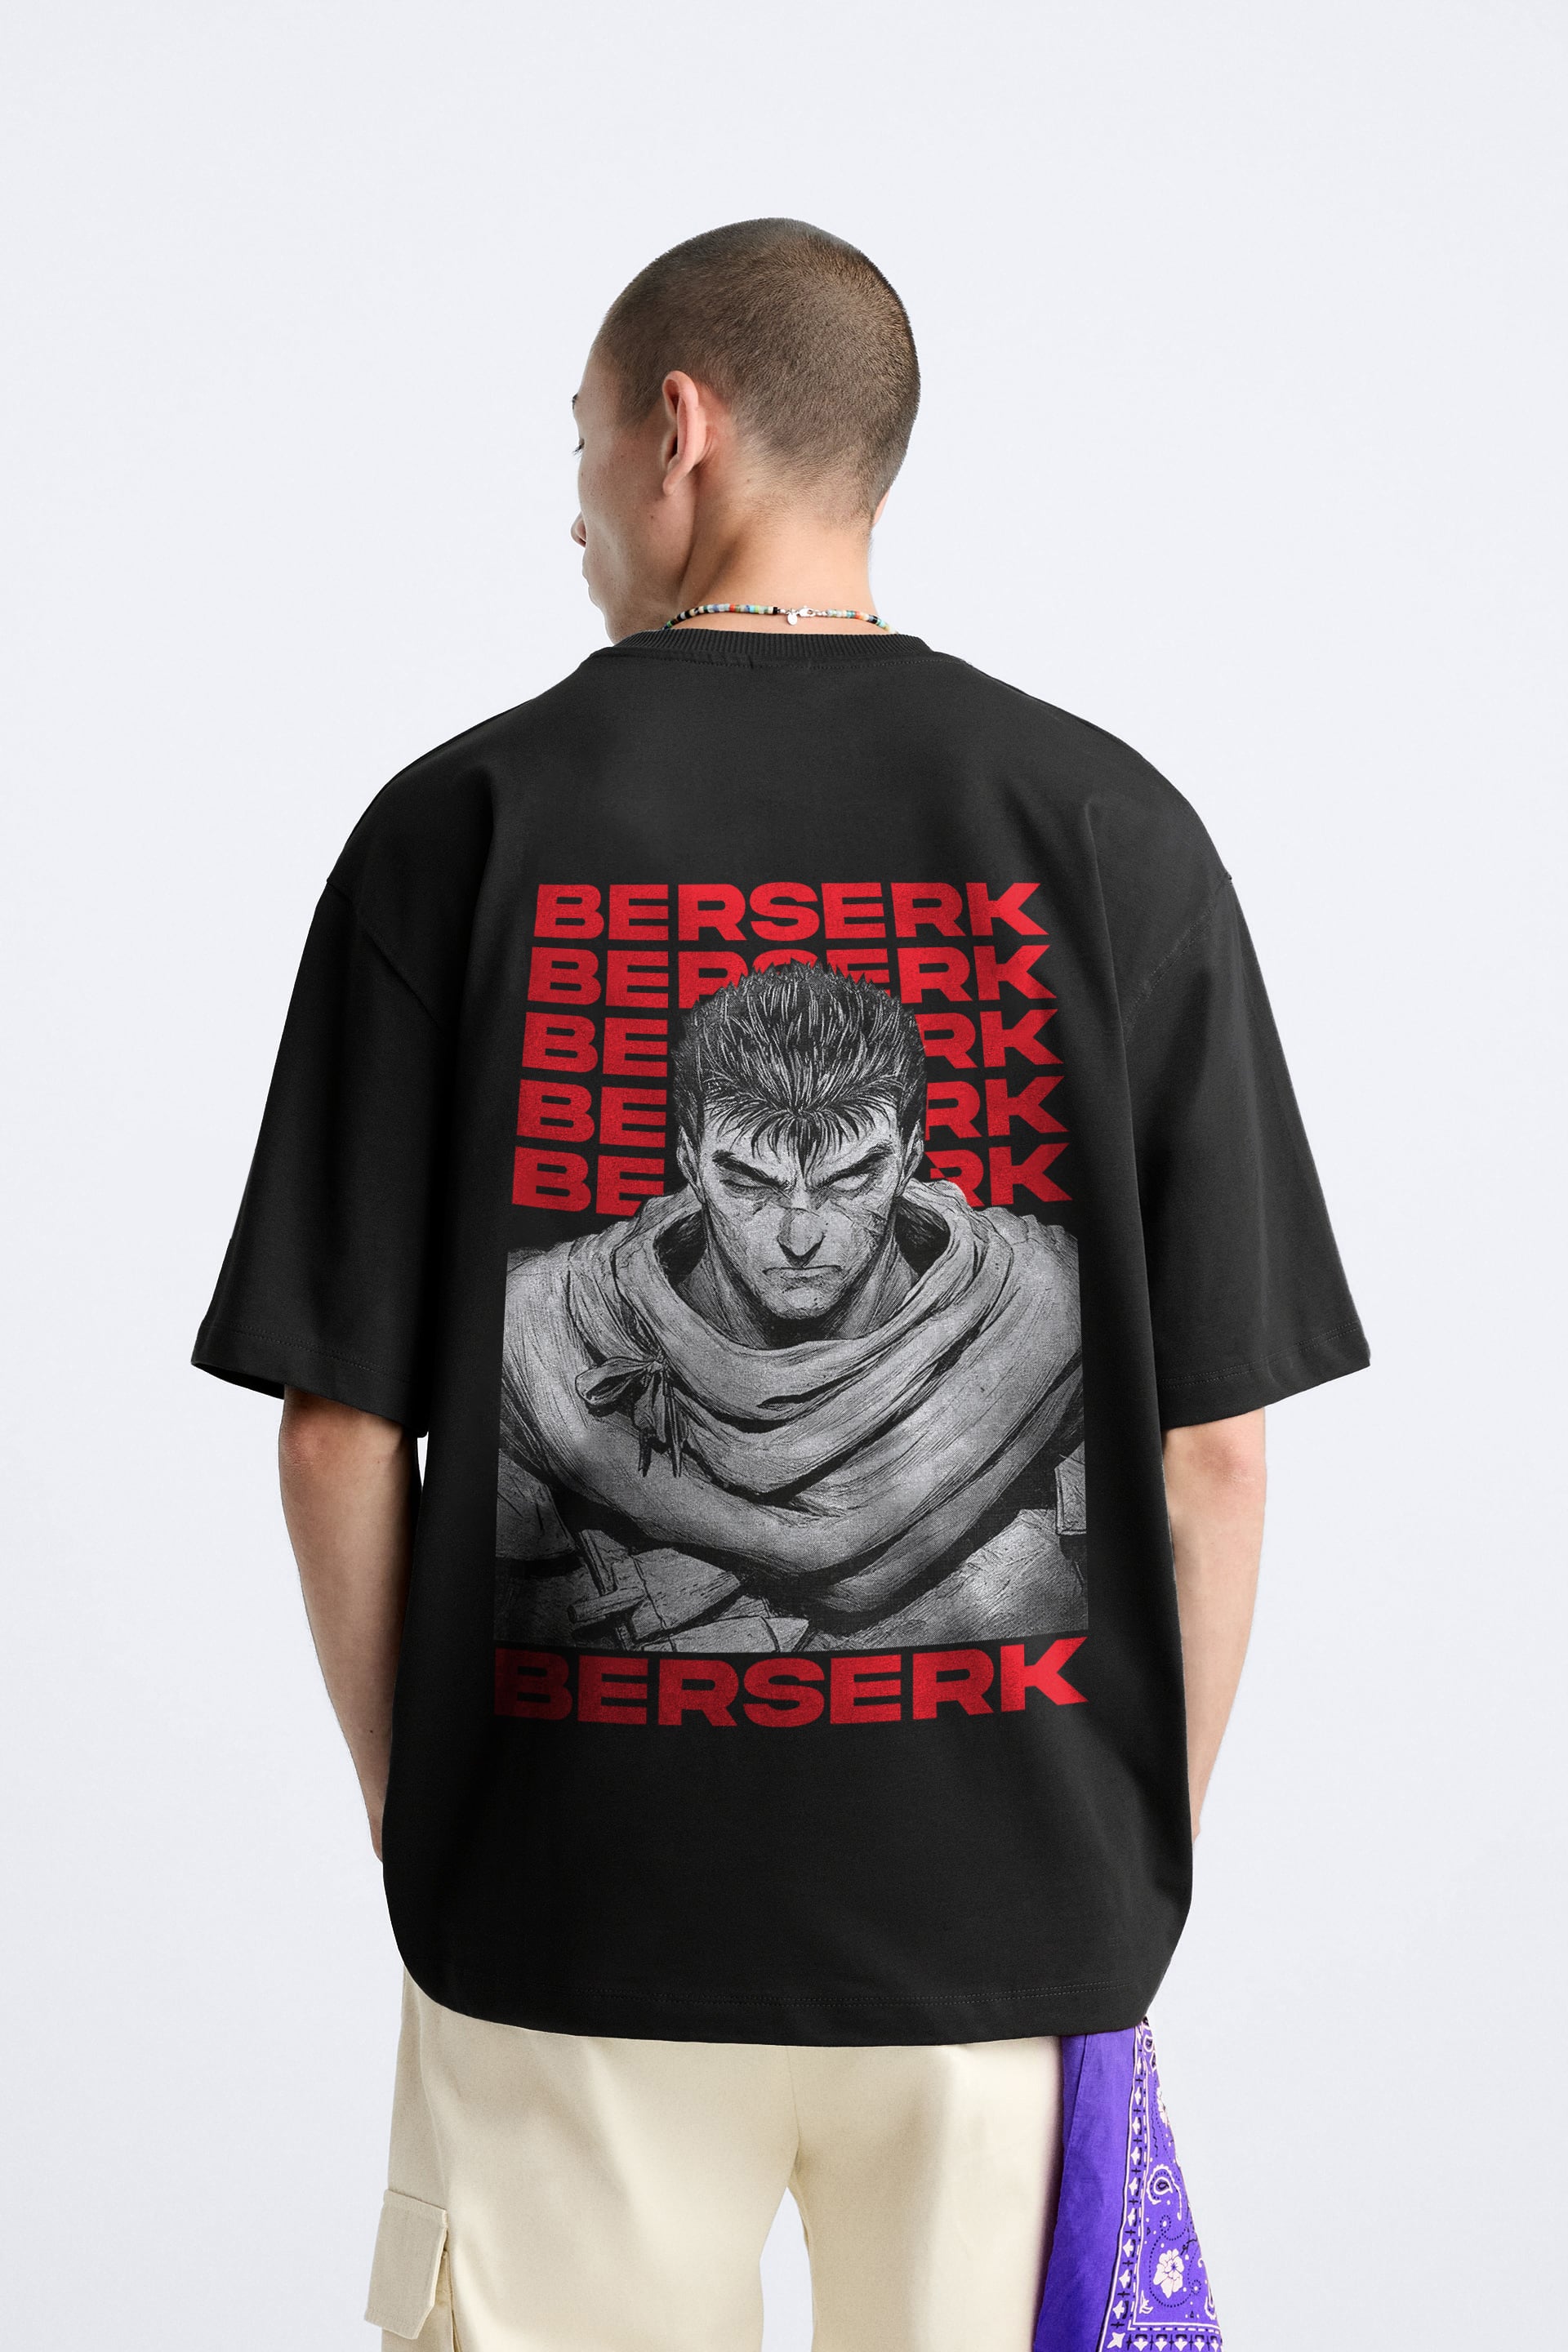 Berserk men oversized graphic back printed anime t shirt